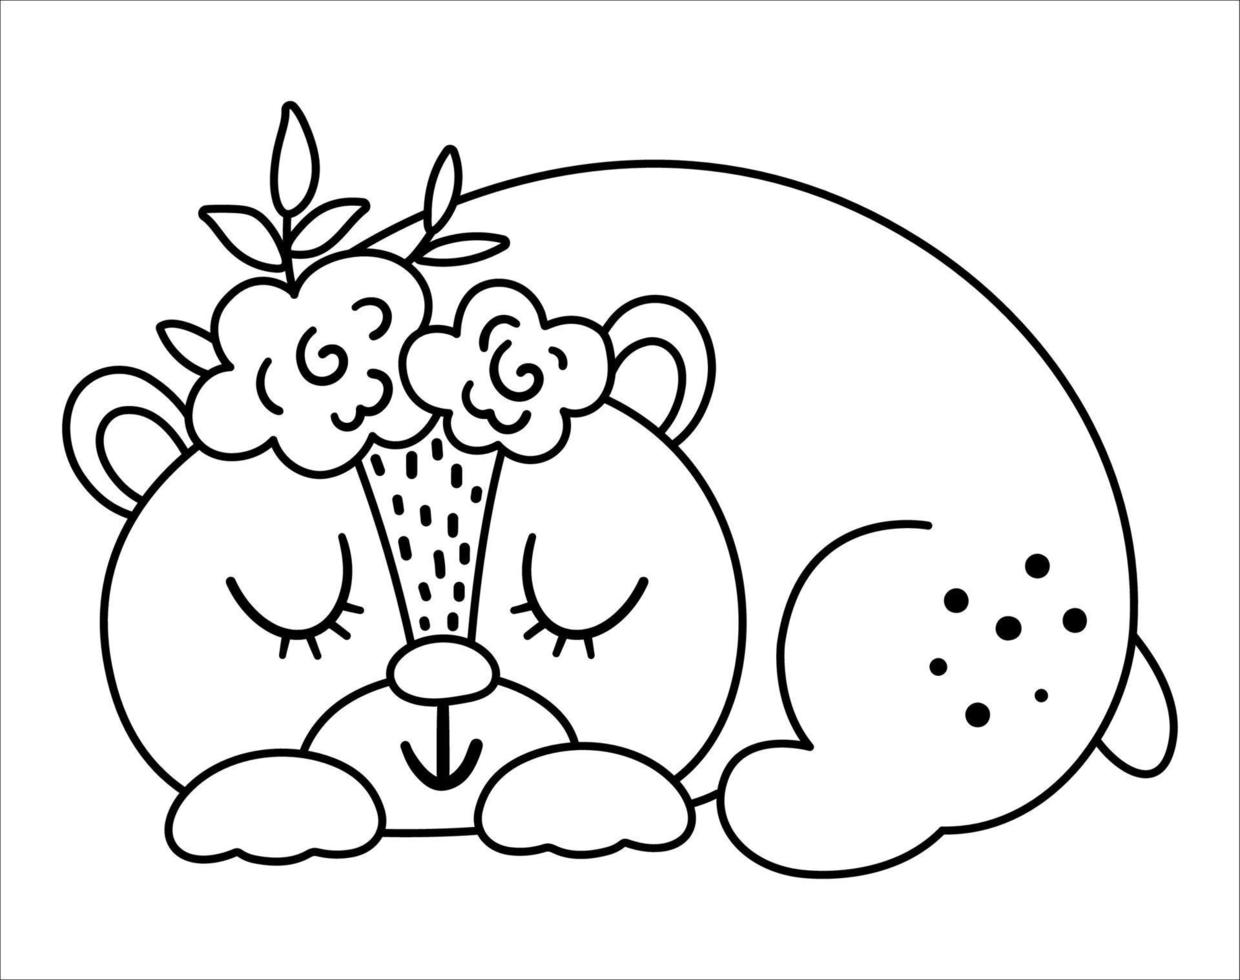 vecteur ours endormi noir et blanc avec des fleurs sur la tête. icône de ligne d'animaux boisés de style bohème mignon isolée sur fond blanc. illustration de forêt boho douce pour la conception de cartes ou d'impression.